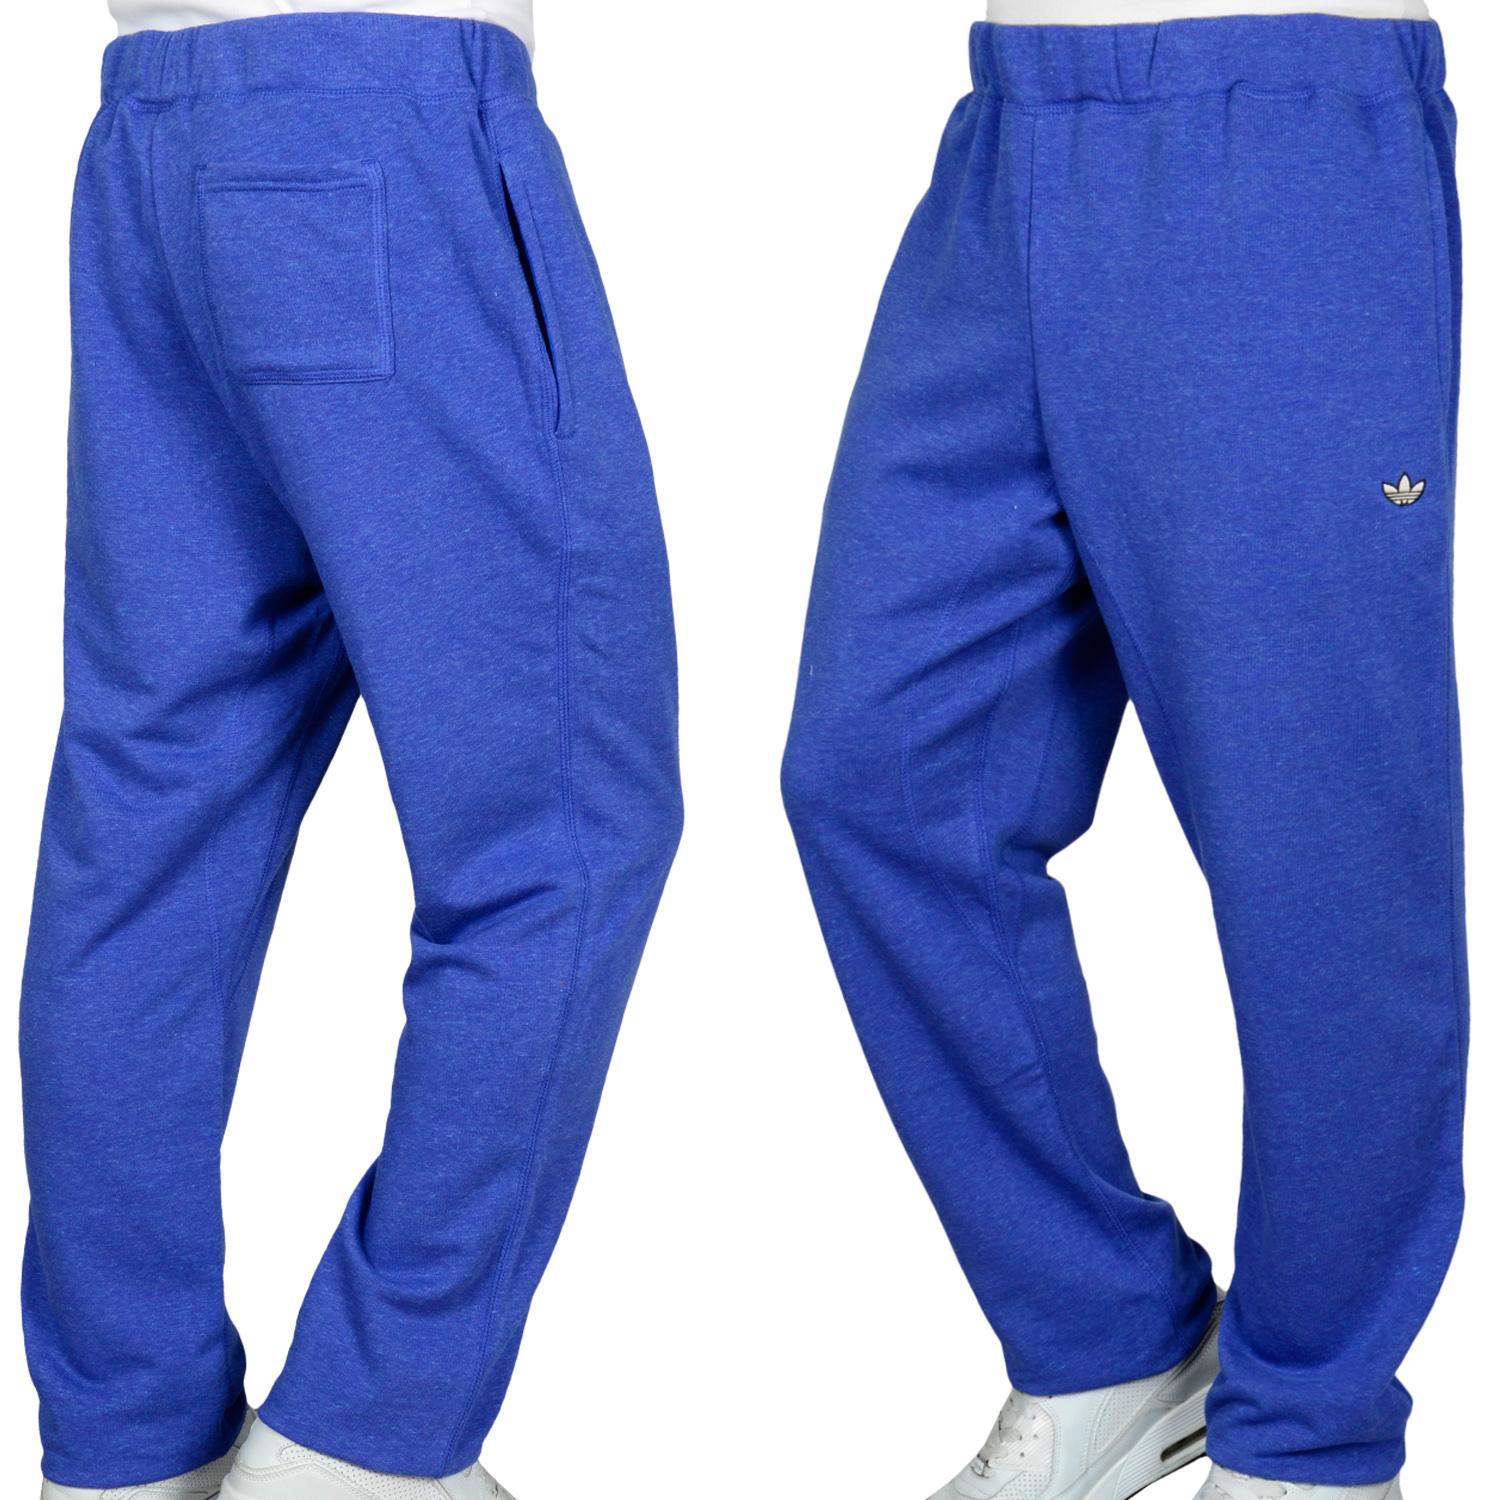 Foto Adidas Pb Cuff Sweat Hombres Pantalones De Entrenamiento Azul foto 598236